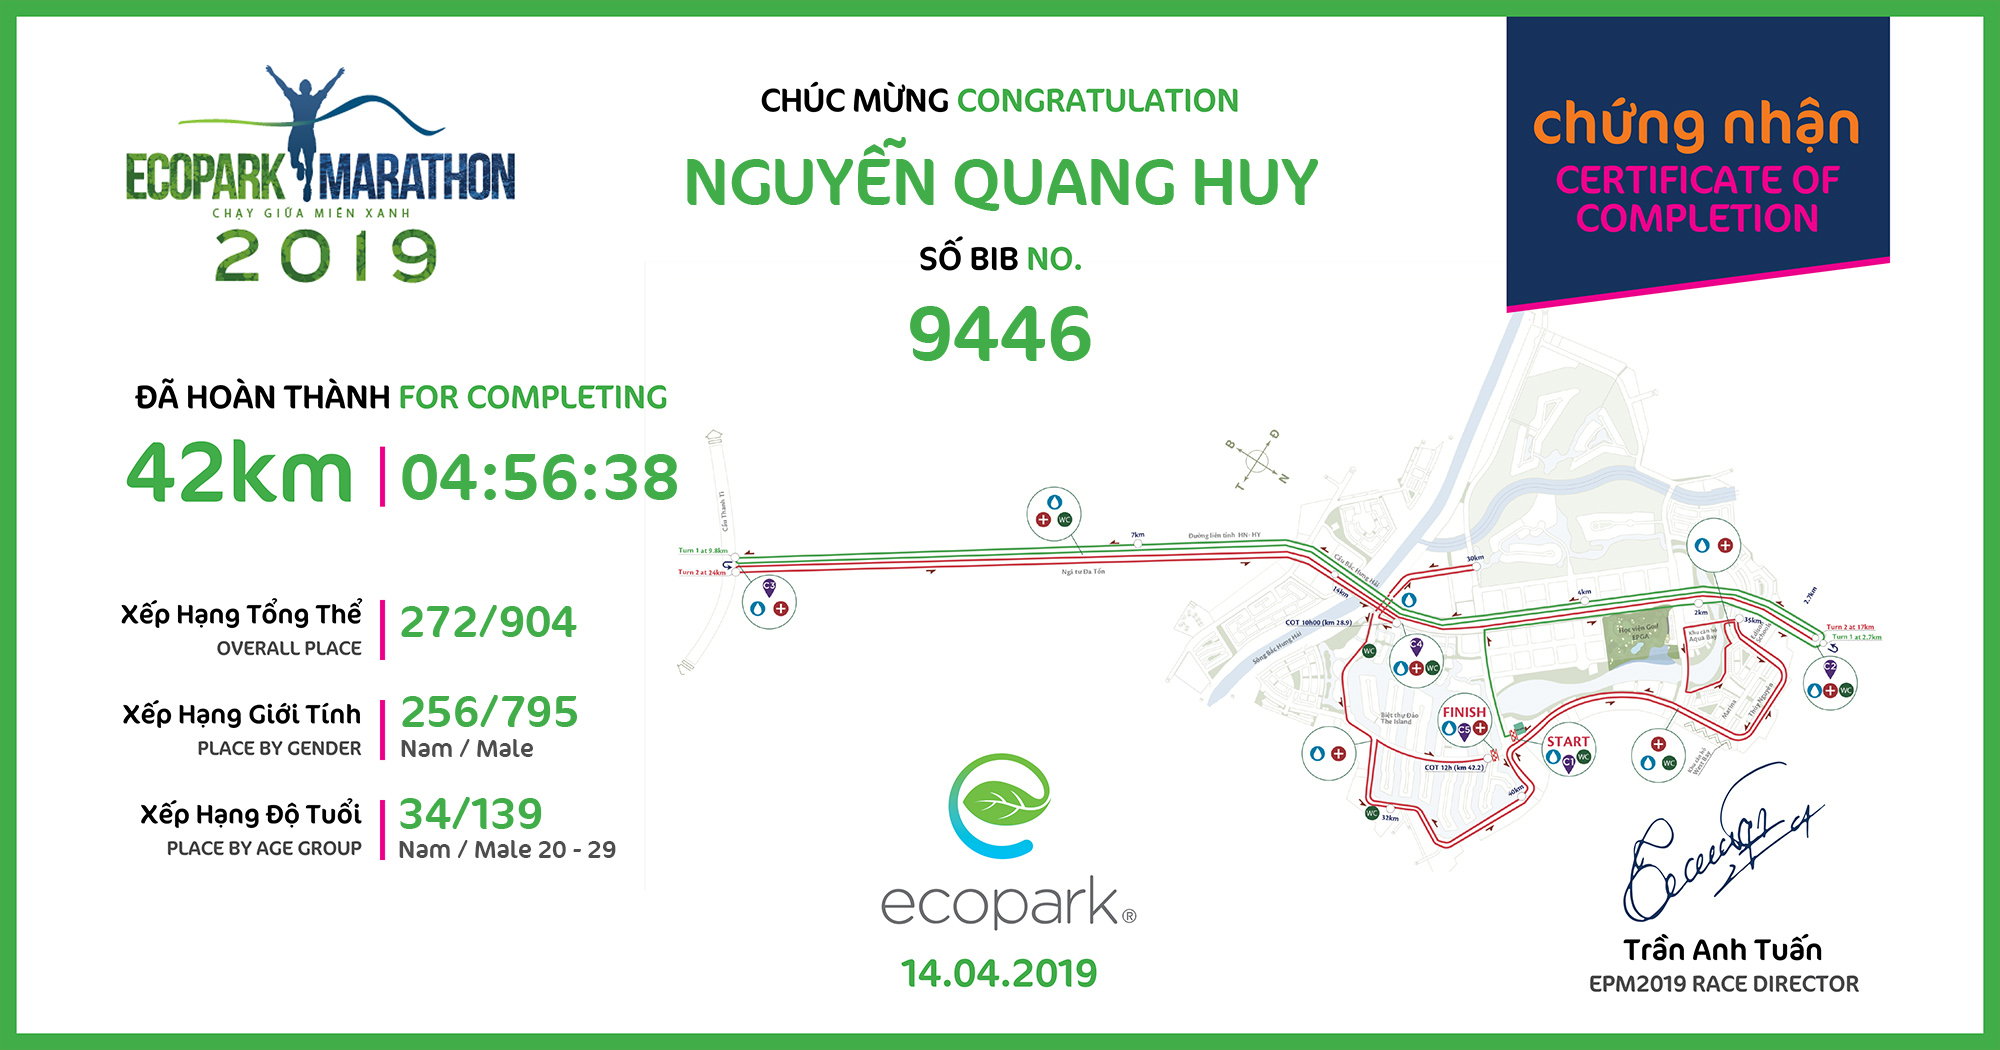 9446 - Nguyễn Quang Huy